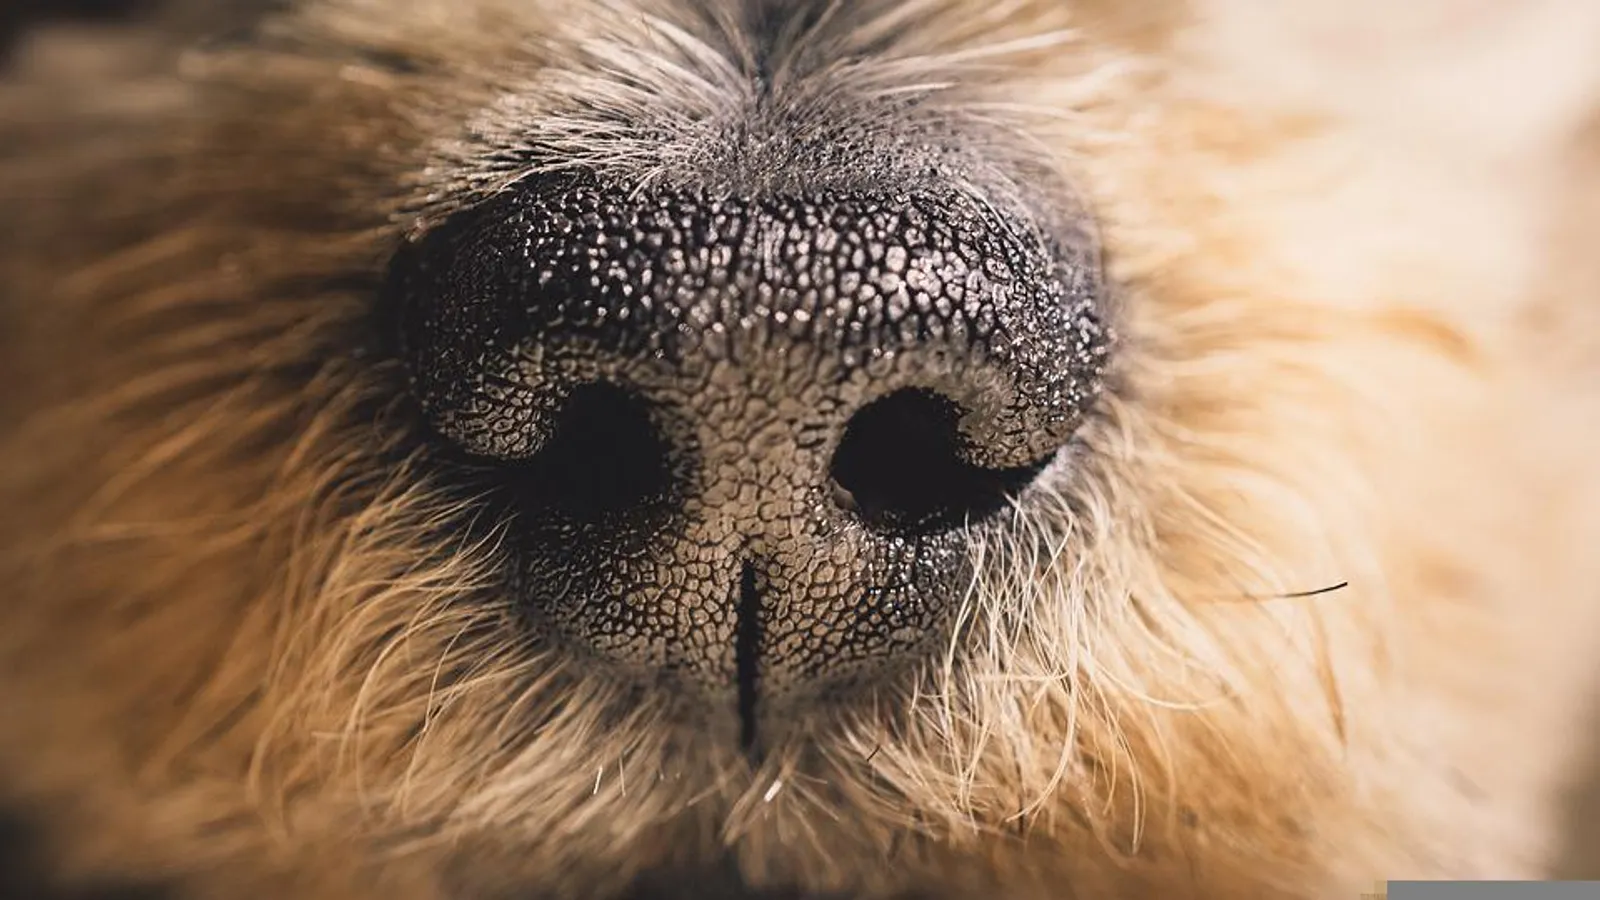 Bisa Memahami Emosi, 25 Fakta Menarik Tentang Anjing ini Bikin Kagum